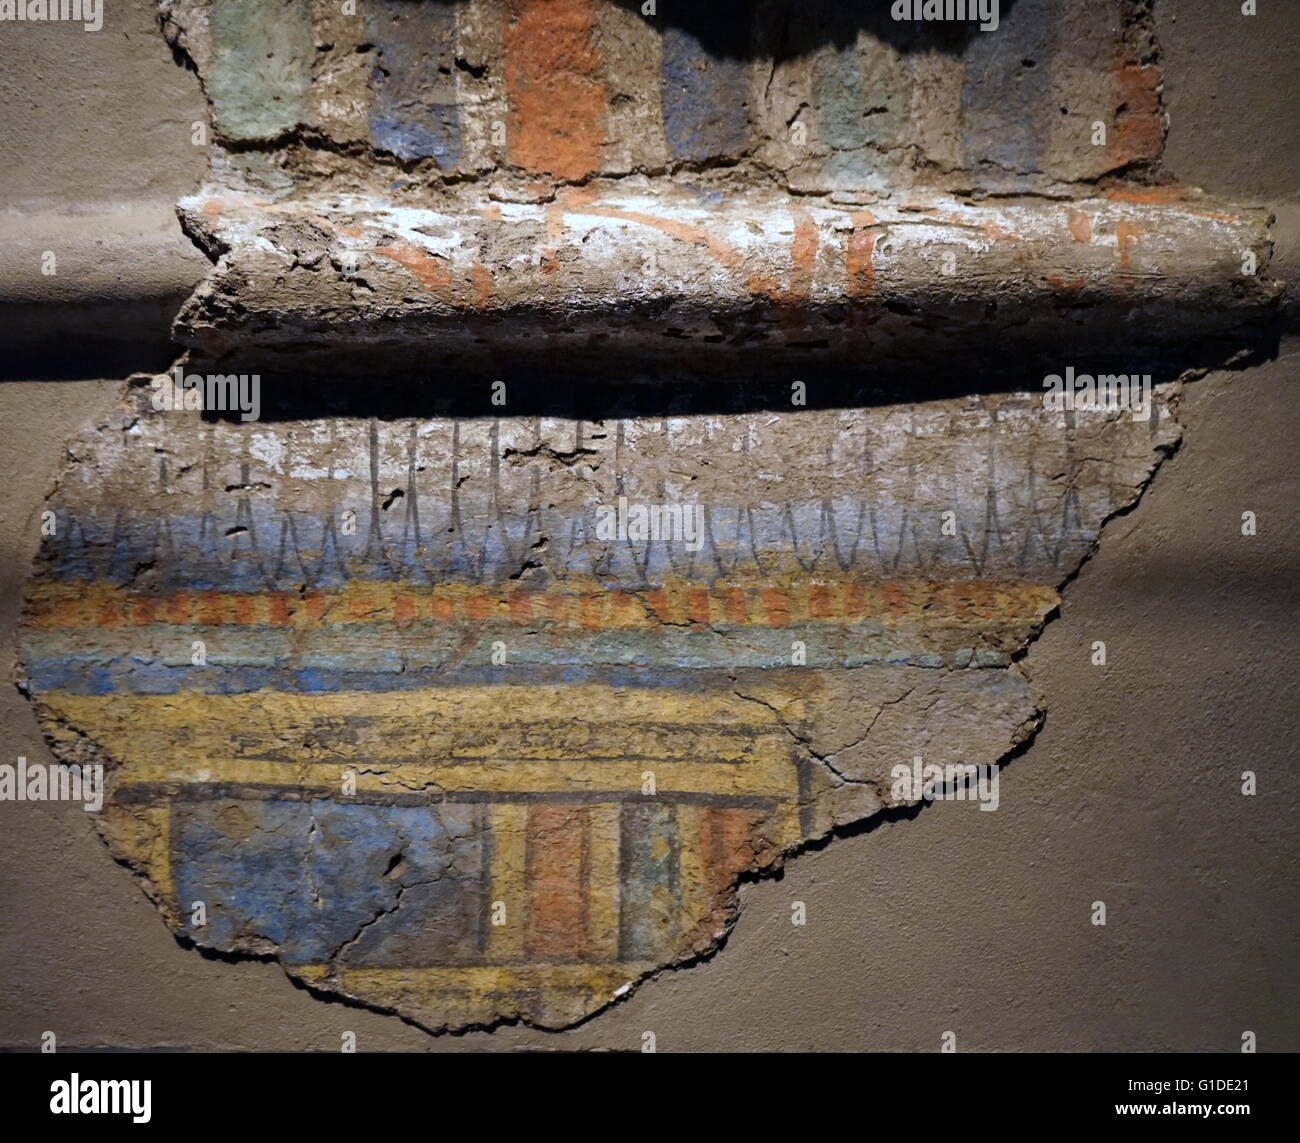 Frammenti di sole-essiccati mudbrick usati nell'antico Egitto. Datato xii secolo A.C. Foto Stock